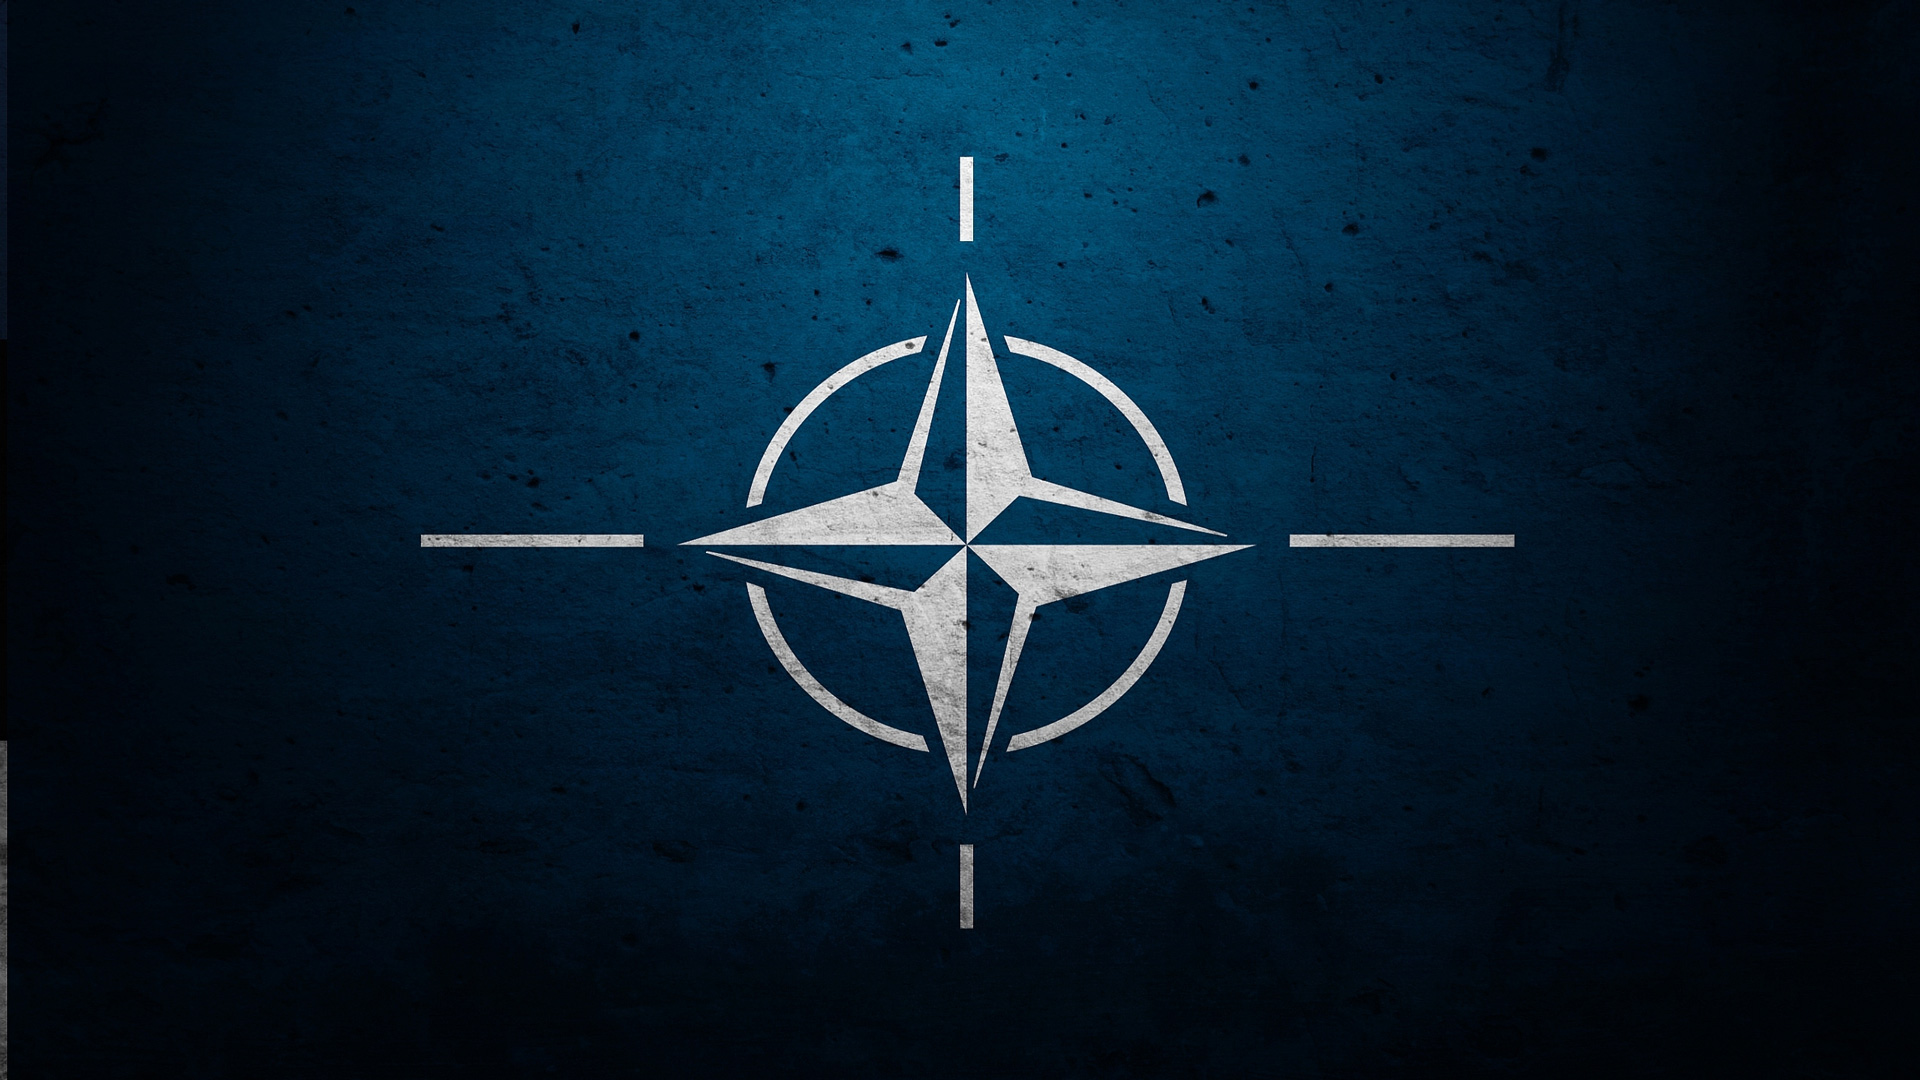 НАТО: российская агрессия как способ оправдать вложения в Альянс